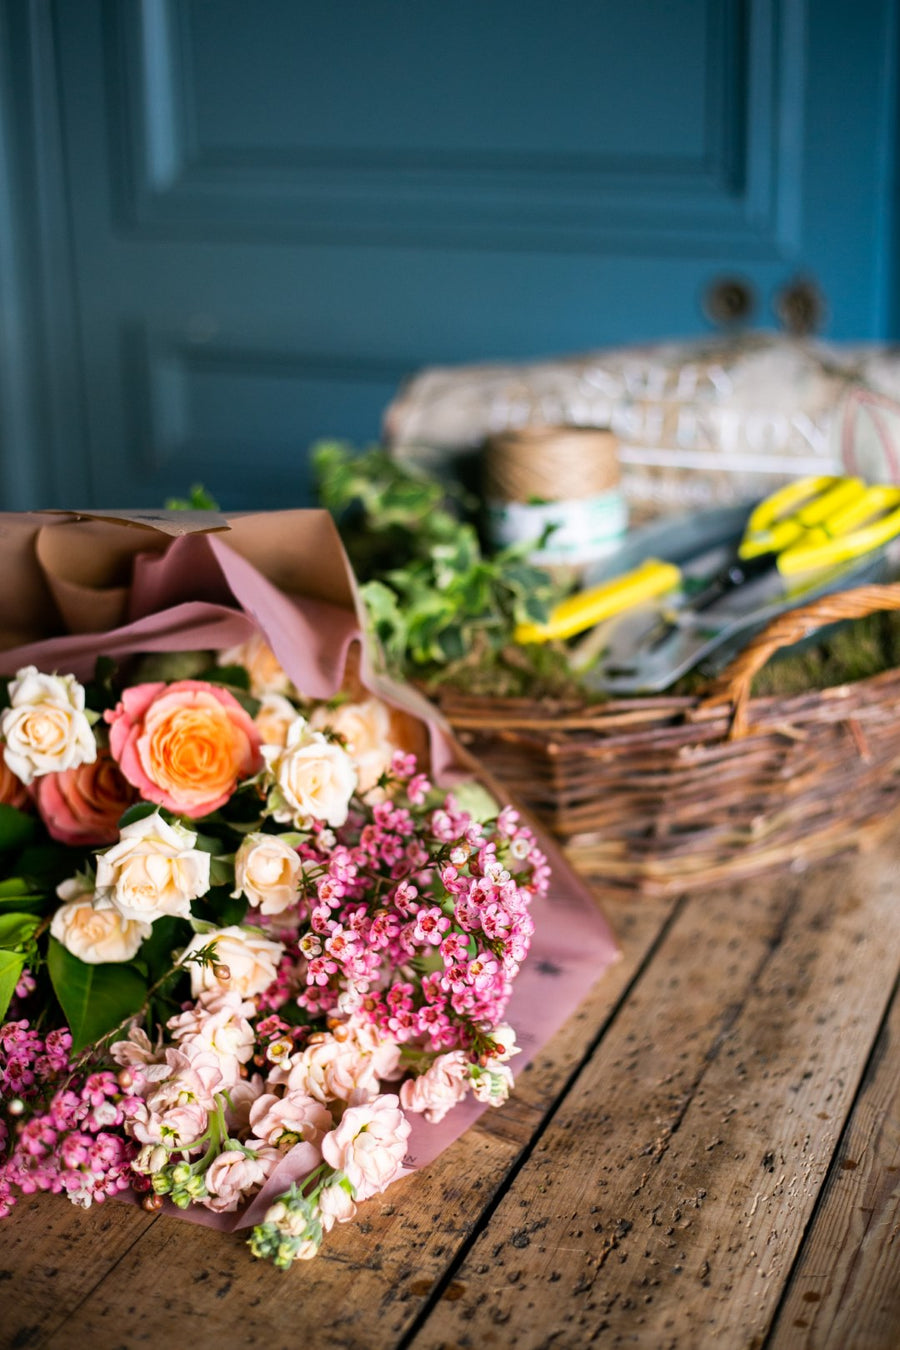 regalo-cesta-jardineria-jardinero-con-flores-sally-hambleton-04